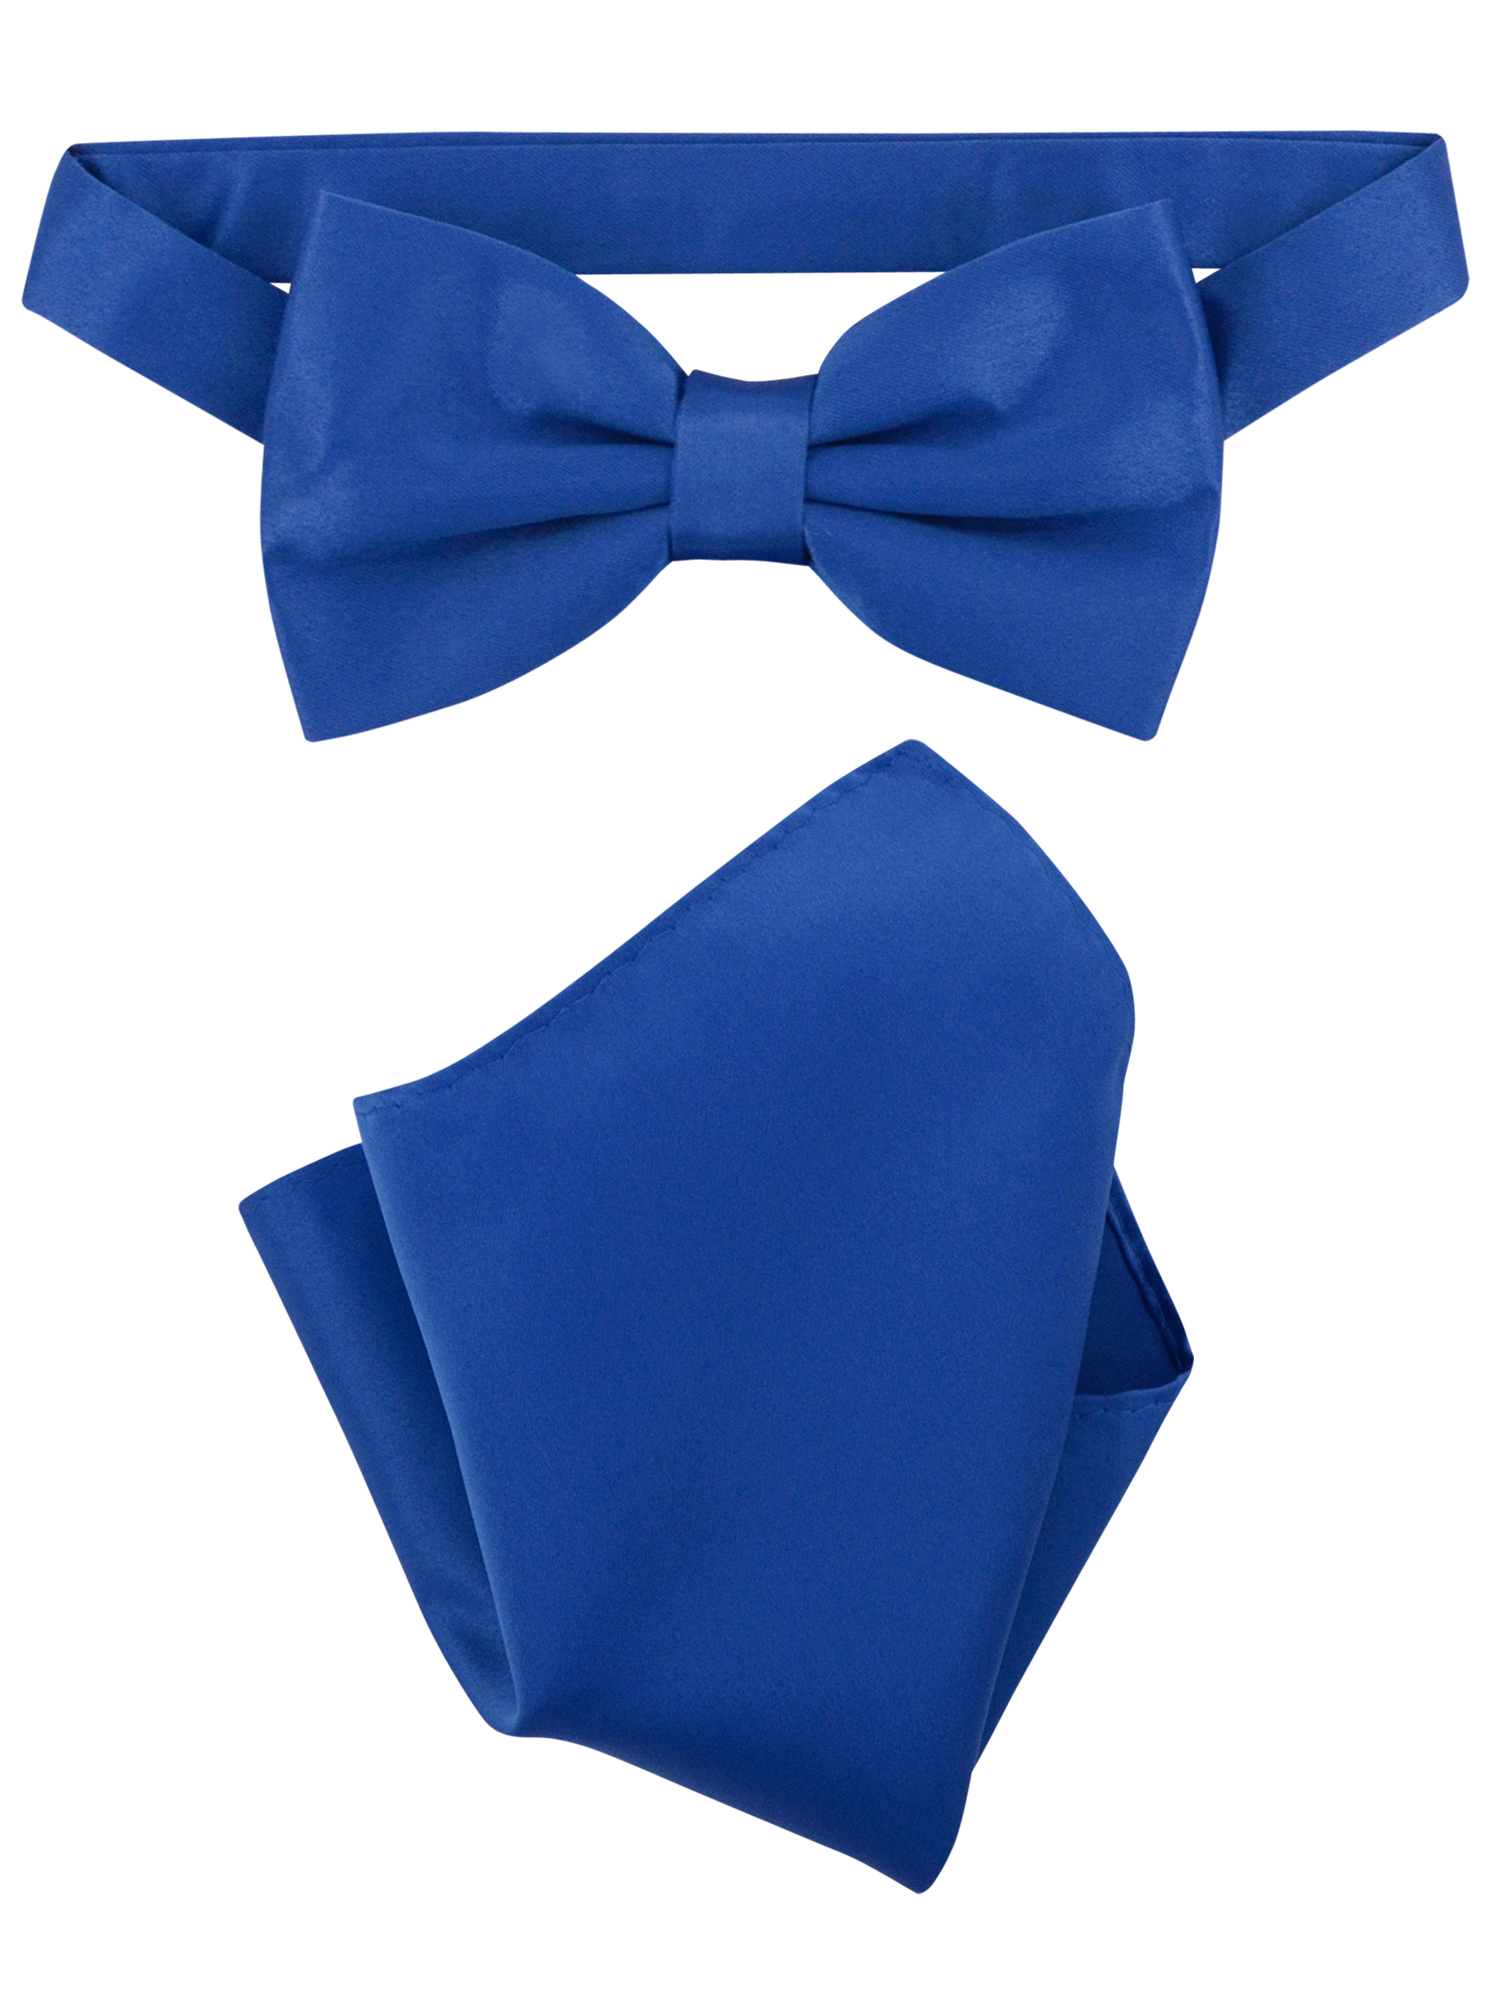 Vesuvio Napoli BowTie Solid Royal Blue Color Mens Bow Tie & Handkerchief - image 1 of 1